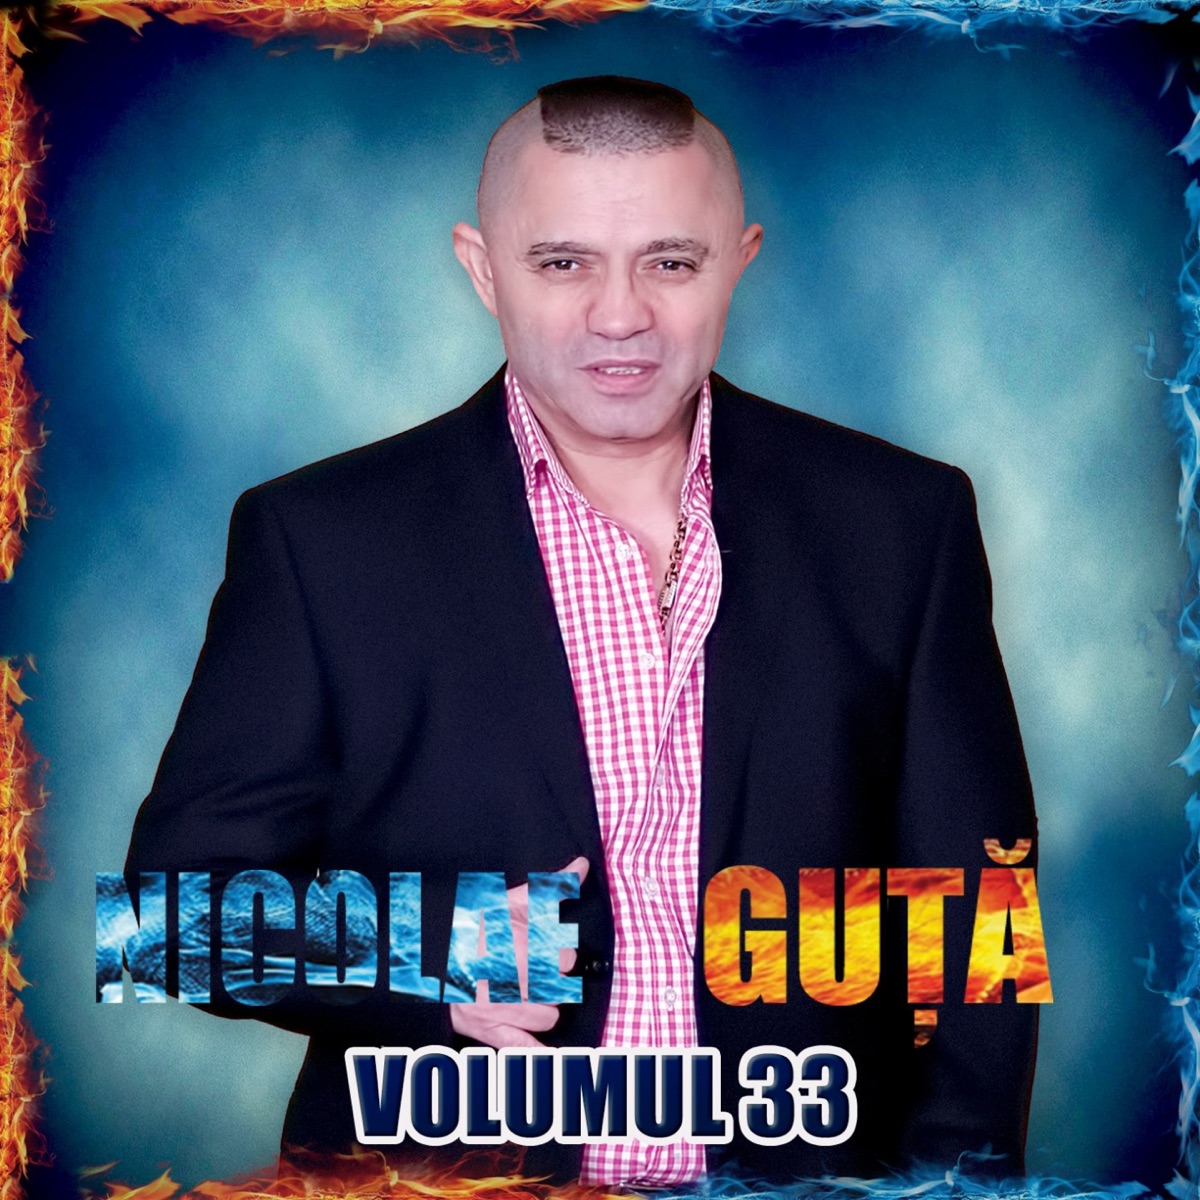 Nicolae Guta, Vol. 35 by Nicolae Guță on Apple Music